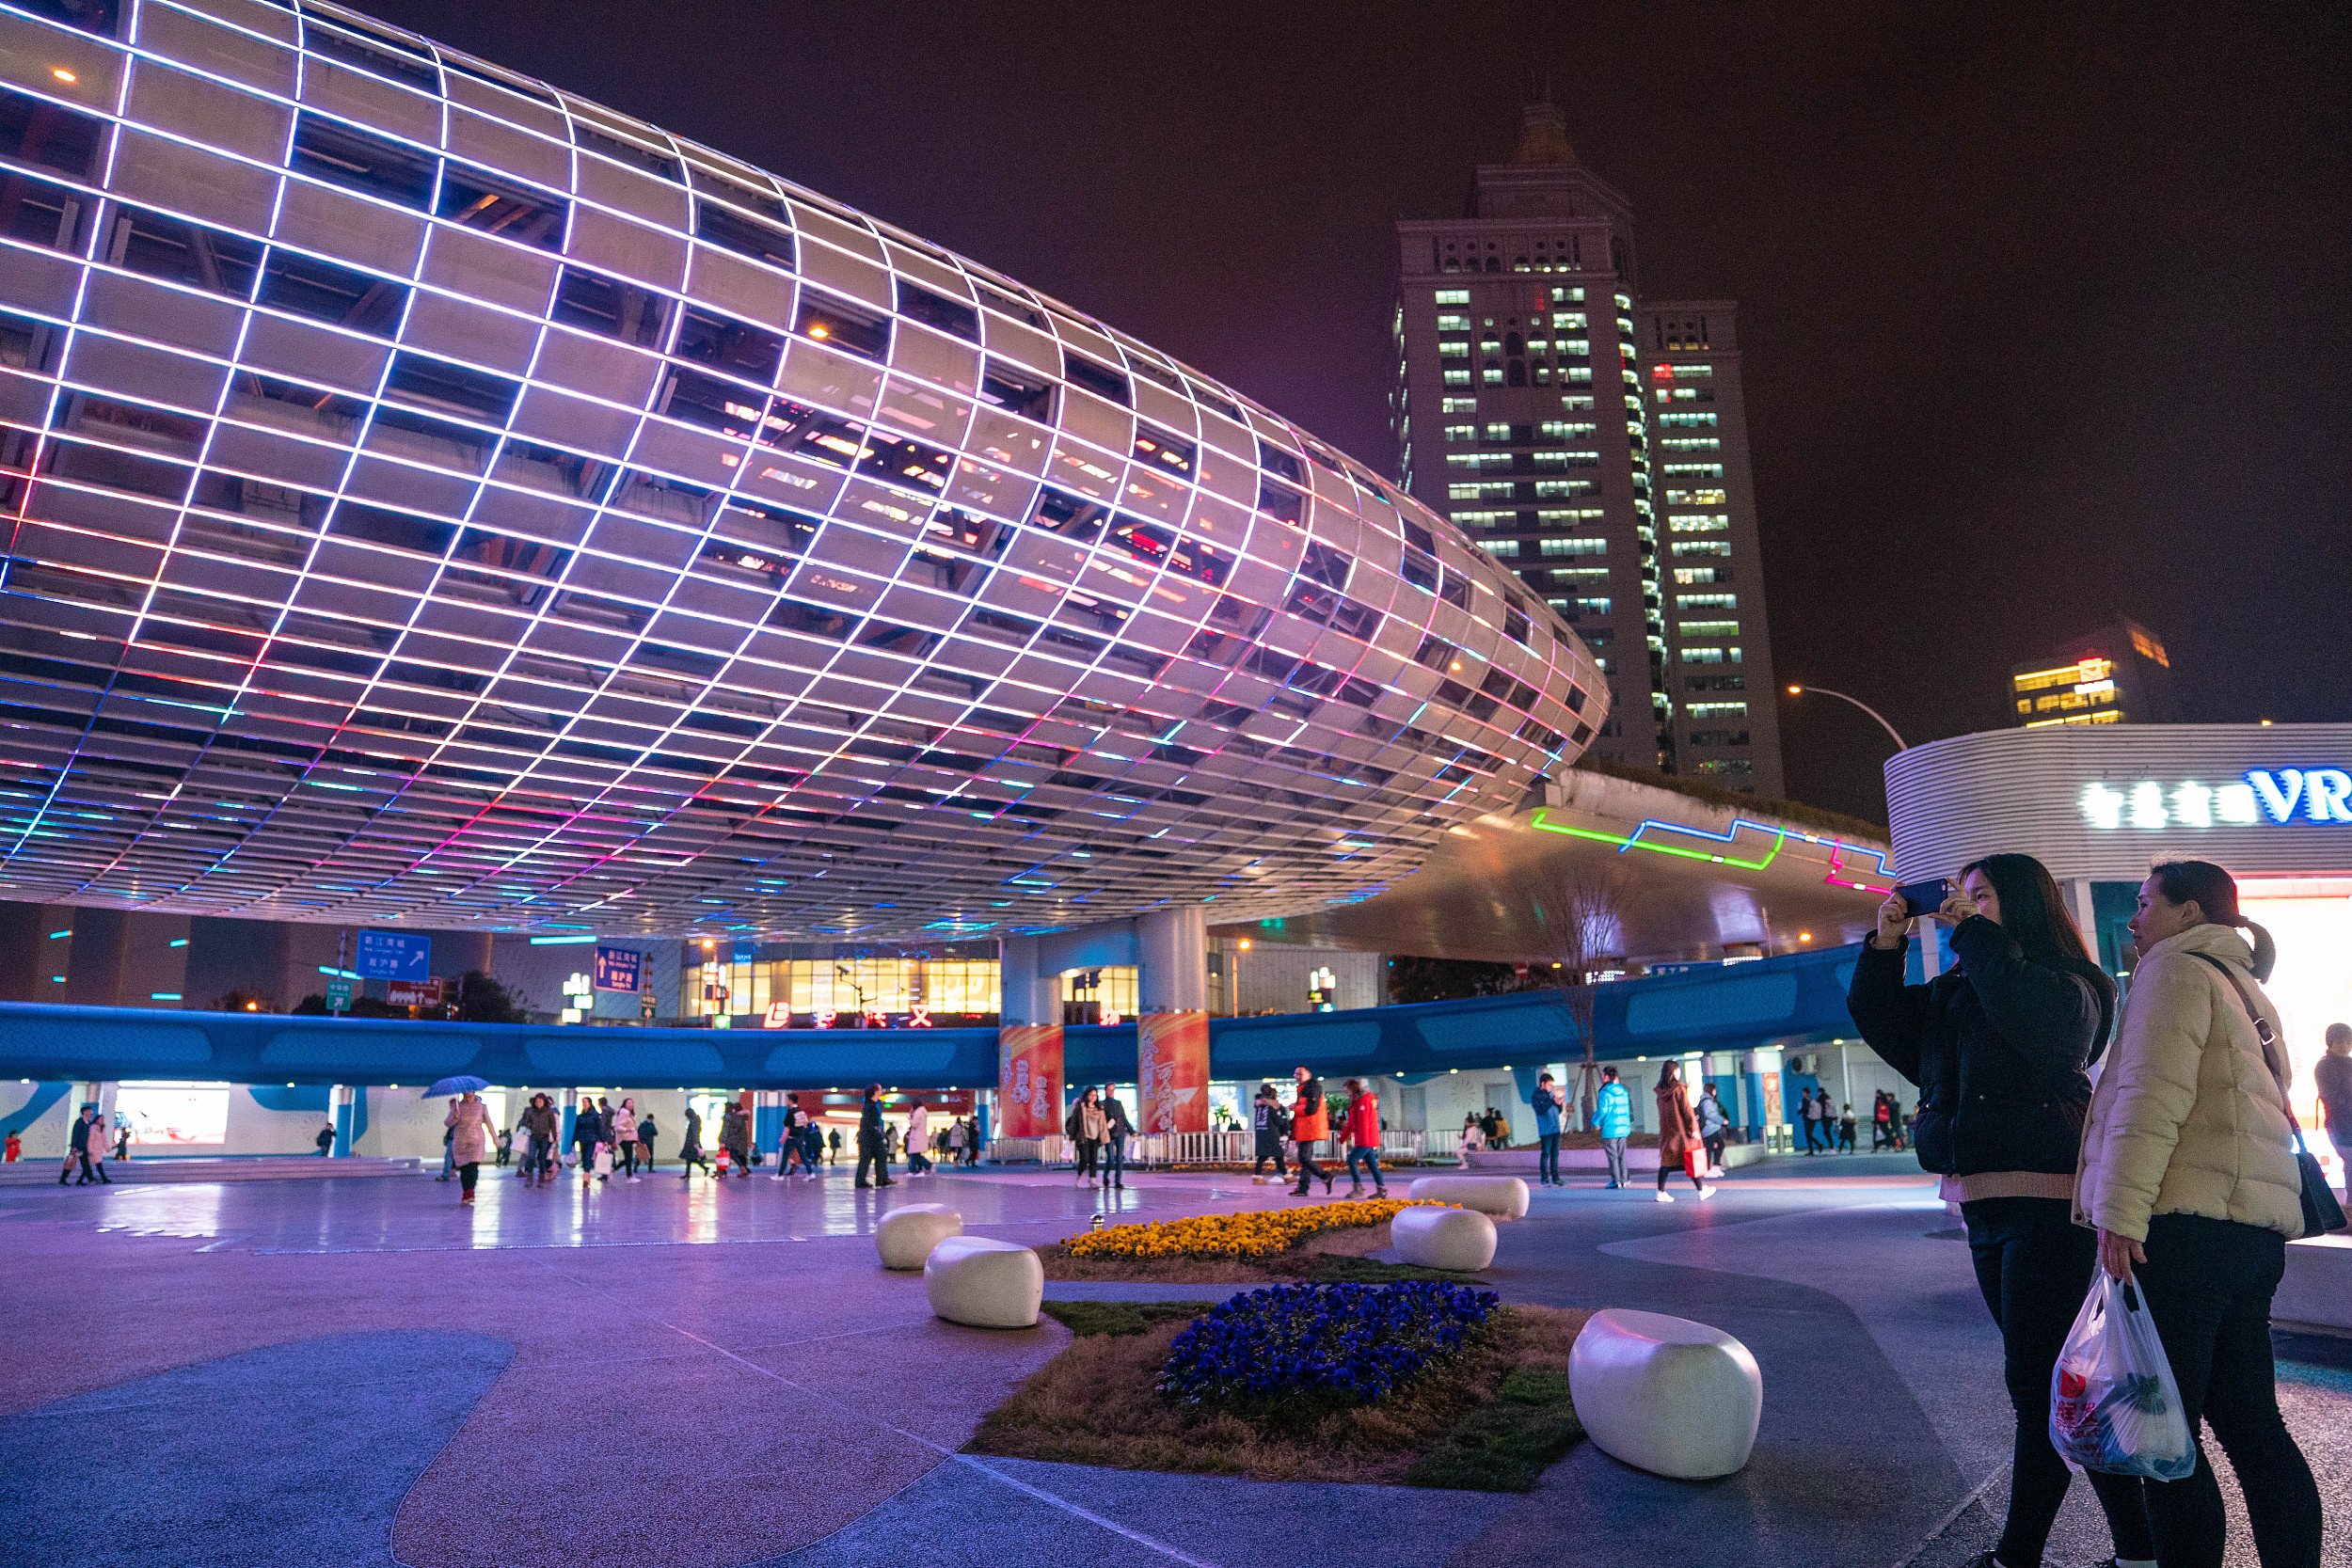 上海:五角场“彩蛋”亮灯 流光溢彩